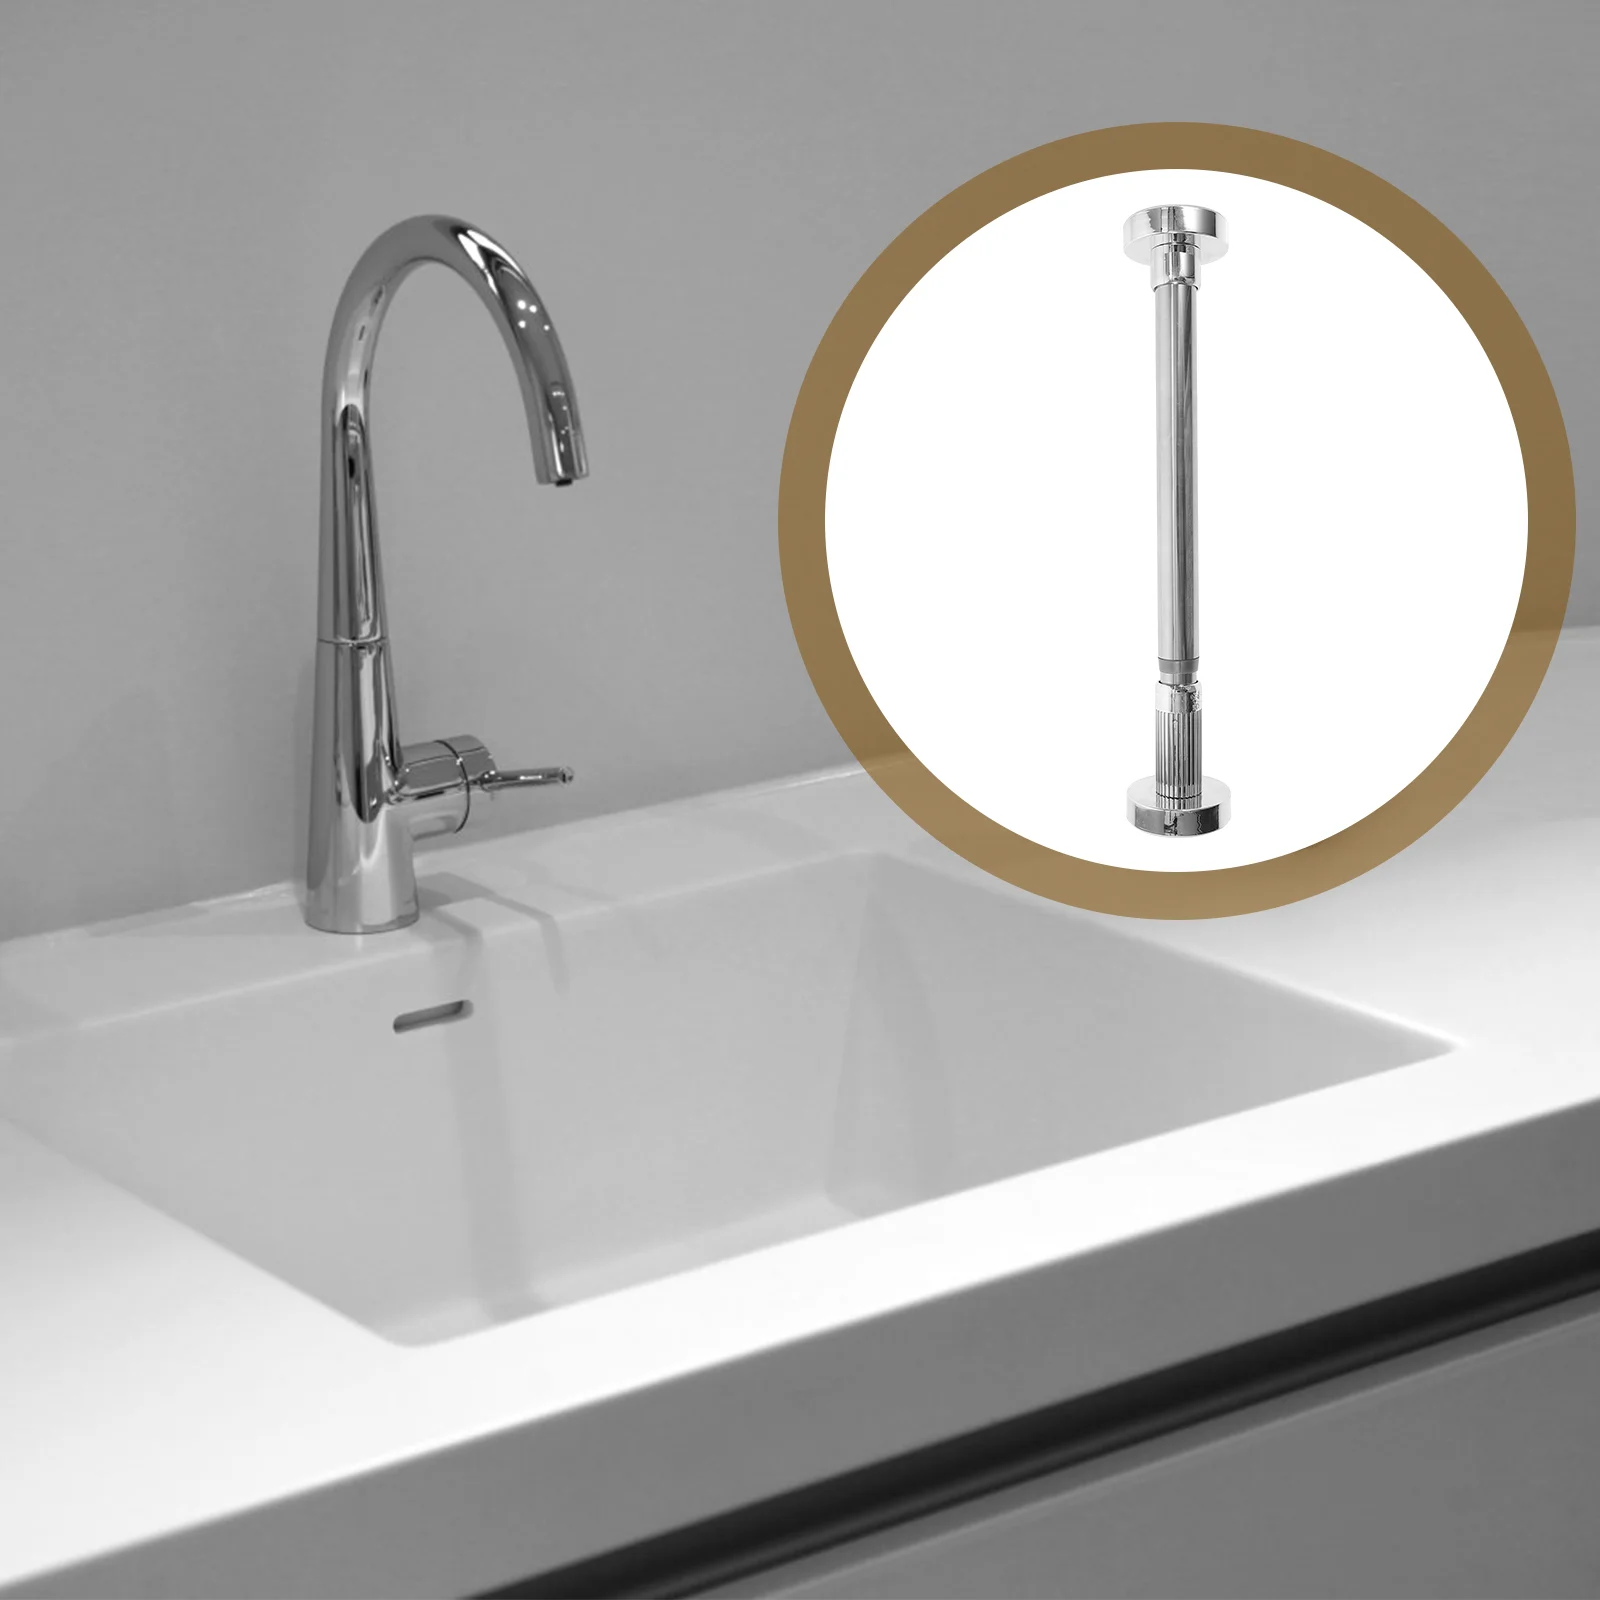 

Undermount Basin Bracket Stainless Steel Sink Bathroom Washbasin Support The Stage Holder Retractable Kitchen sinks